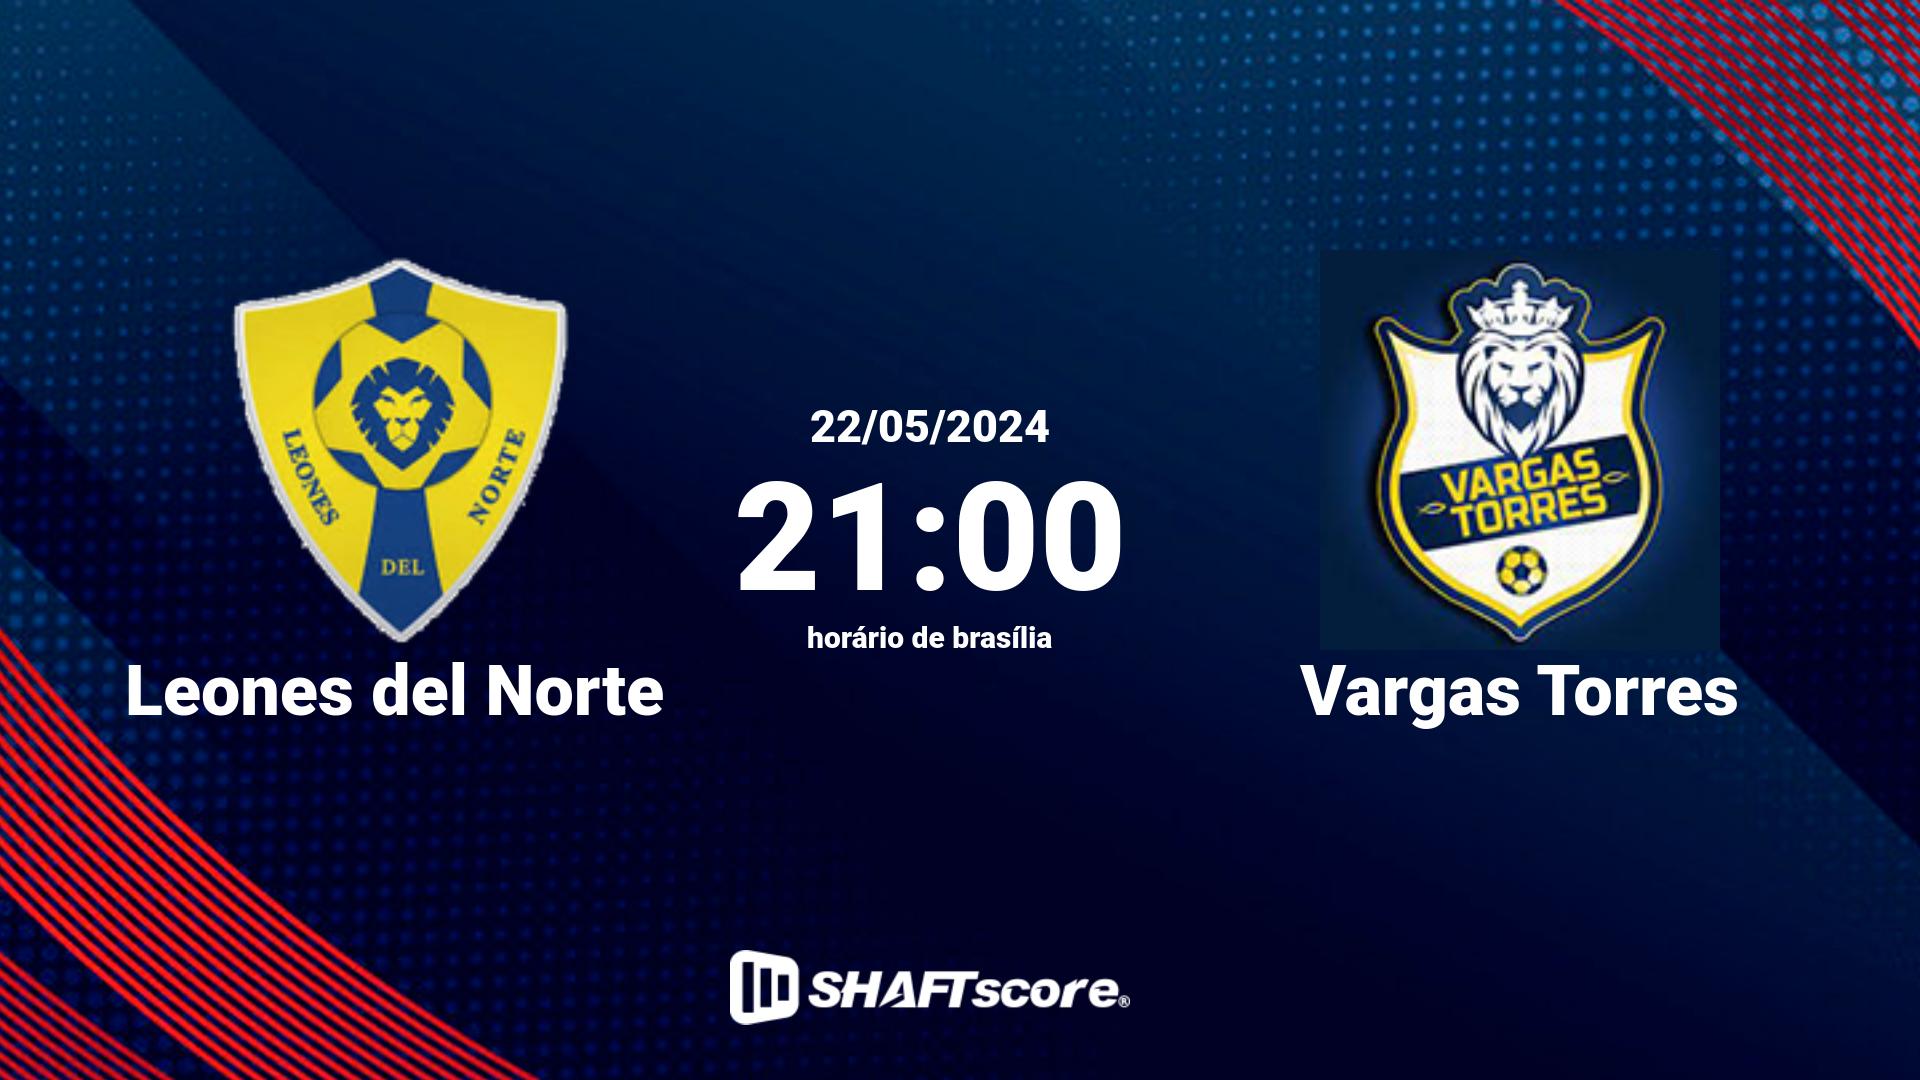 Estatísticas do jogo Leones del Norte vs Vargas Torres 22.05 21:00